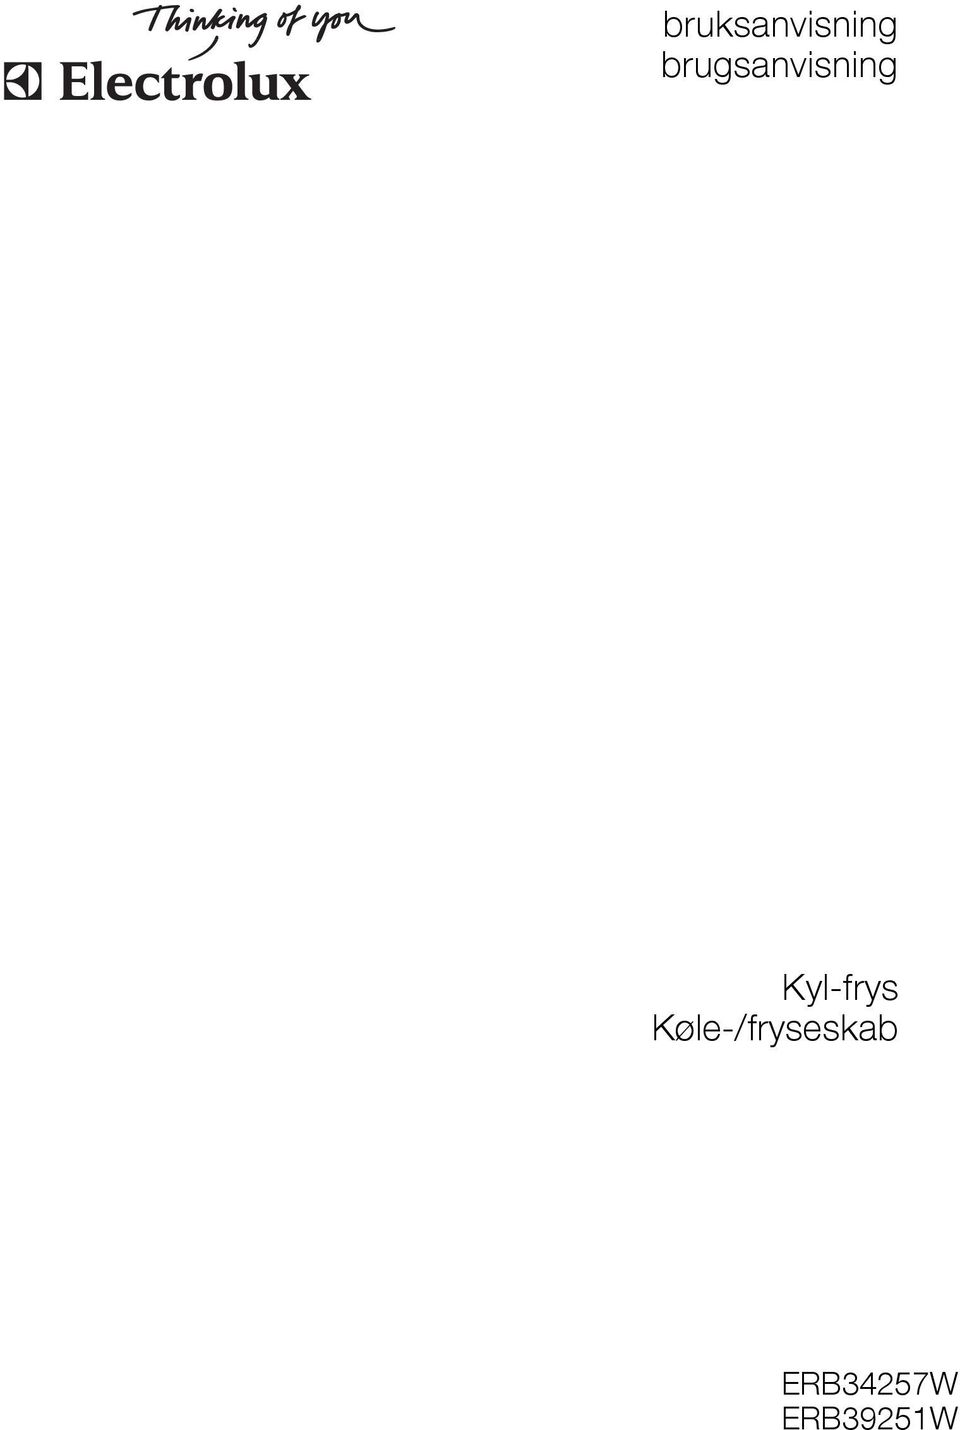 Kyl-frys